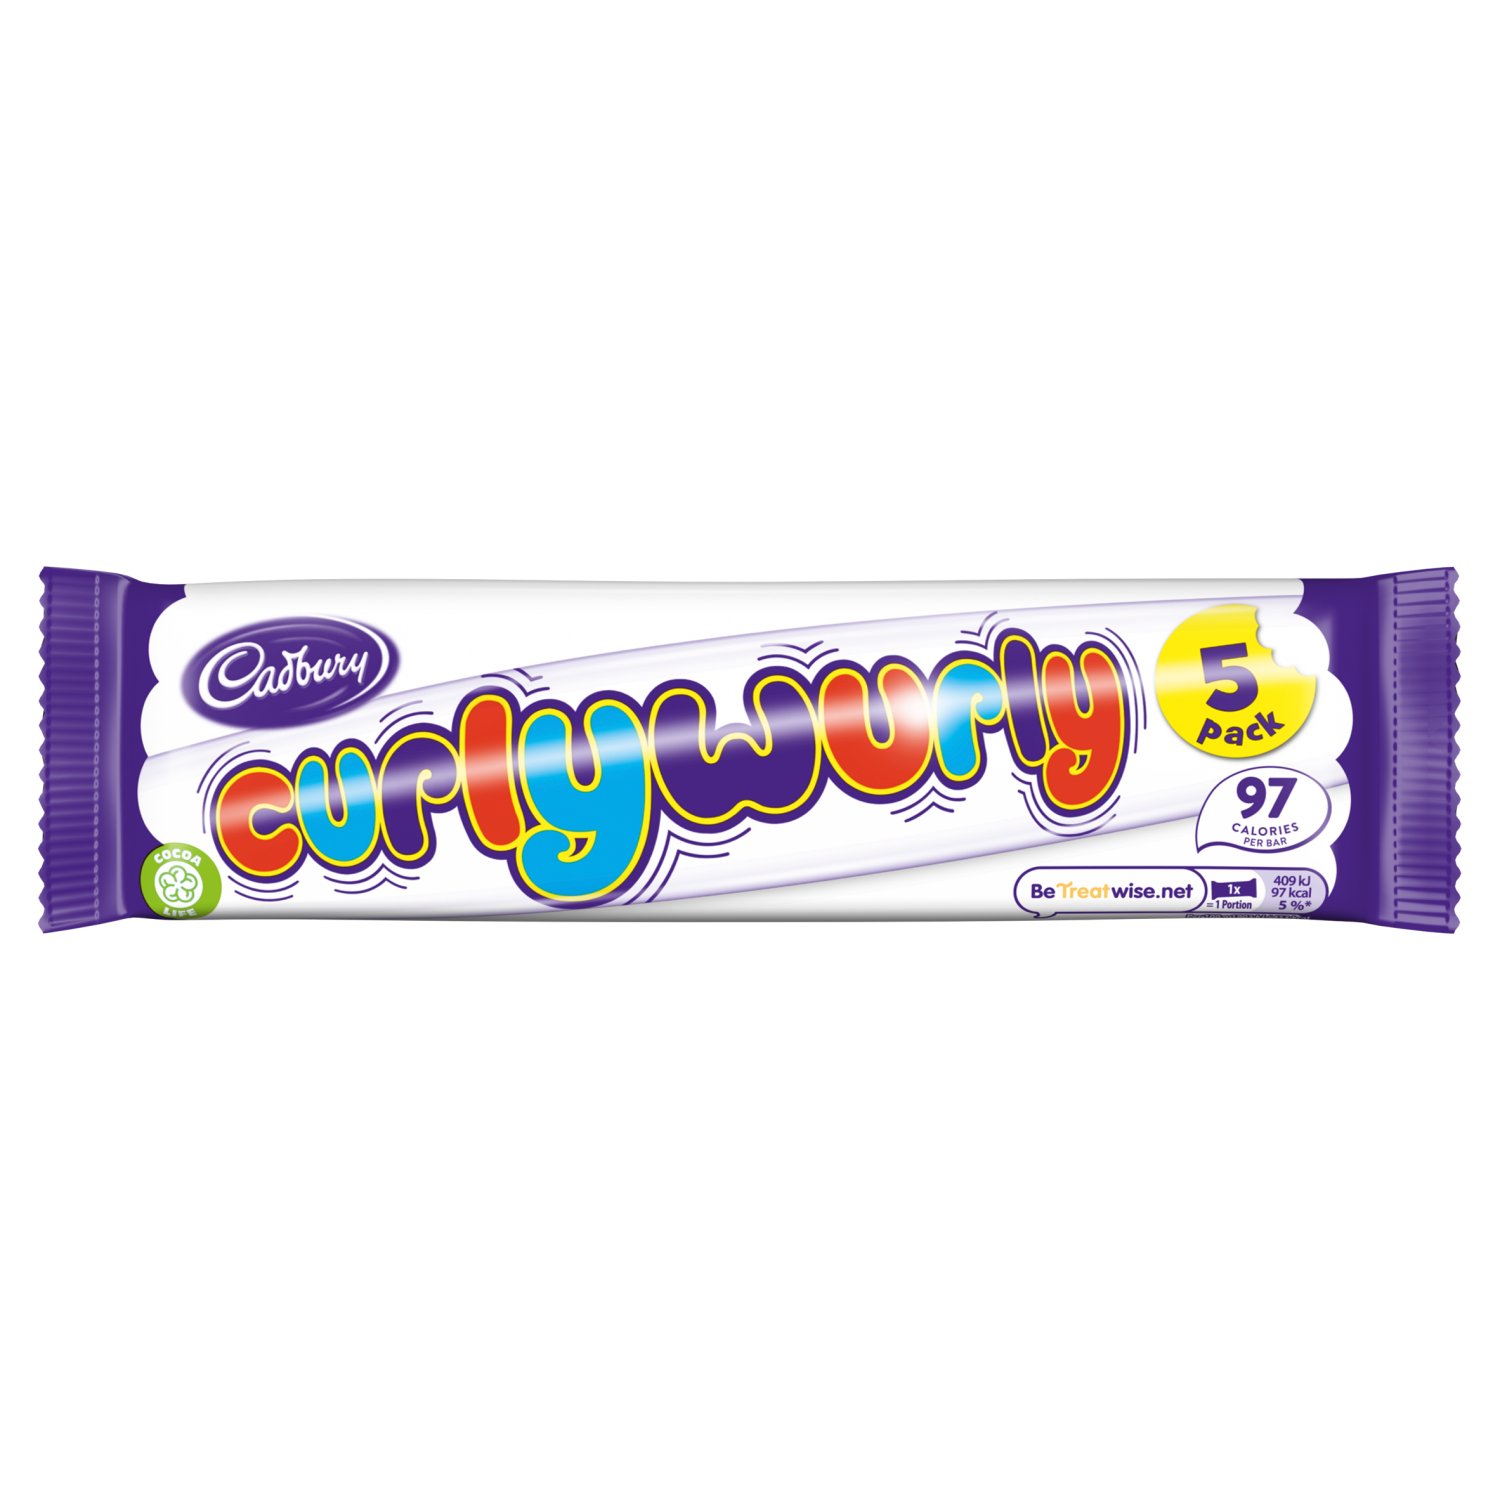 Cadbury Curly Wurly Chocolate Bars 5 Pack (21.5 g)